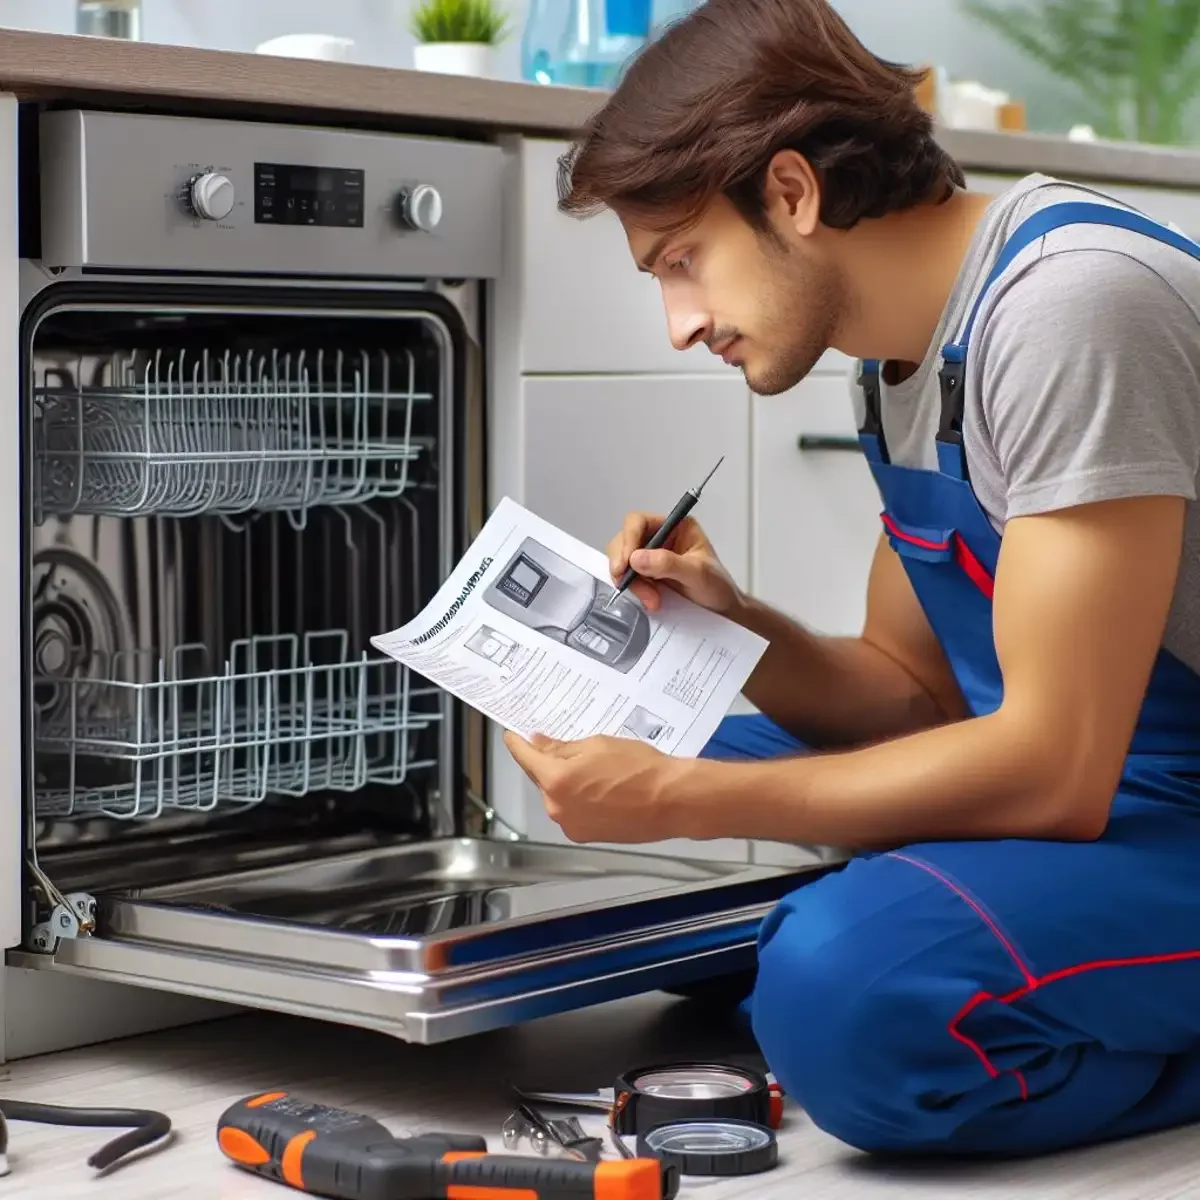 LG dishwasher troubleshooting manual